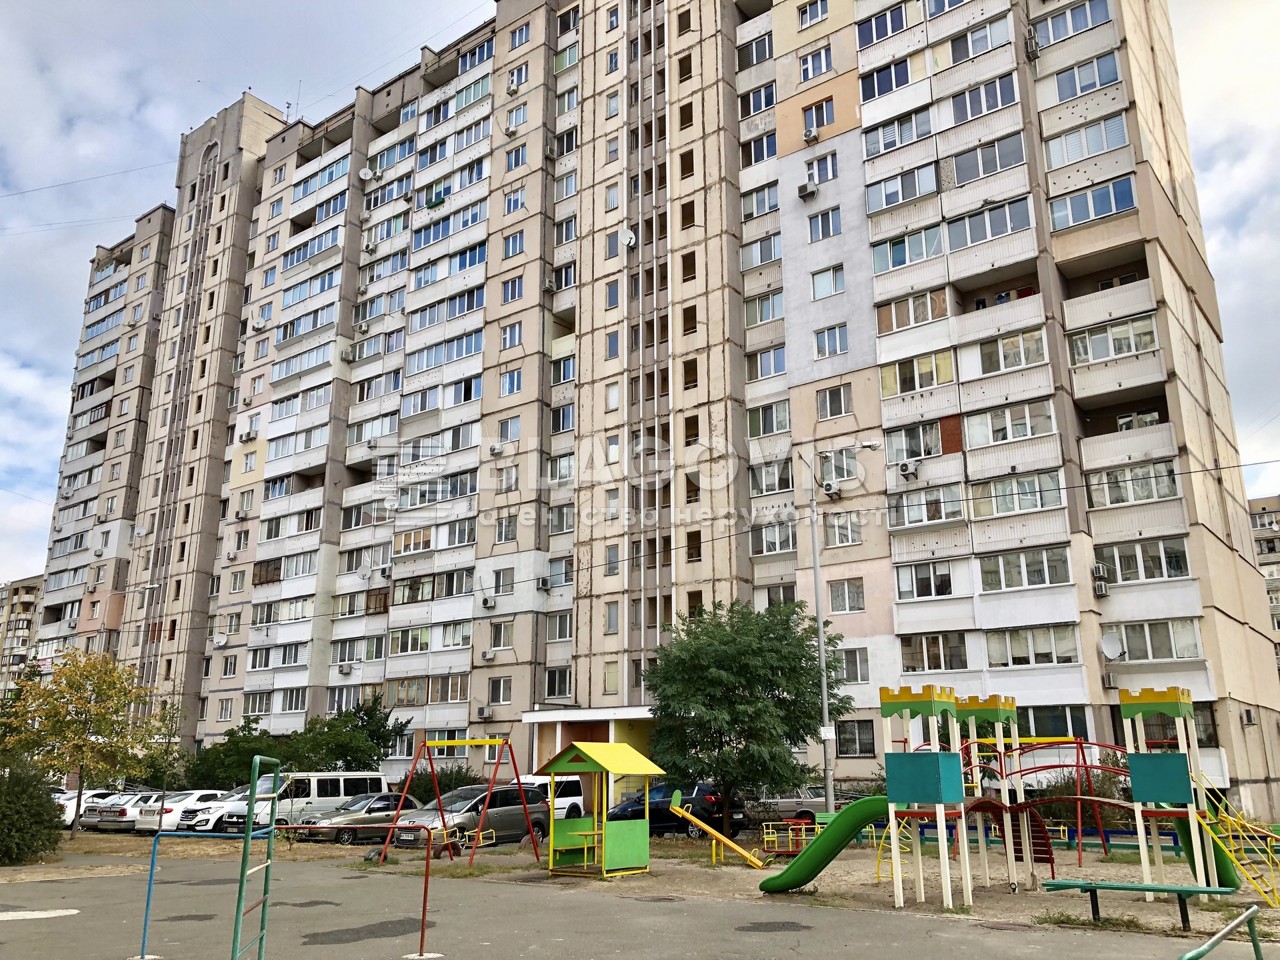 Квартира R-46478, Алматинская (Алма-Атинская), 39д, Киев - Фото 1